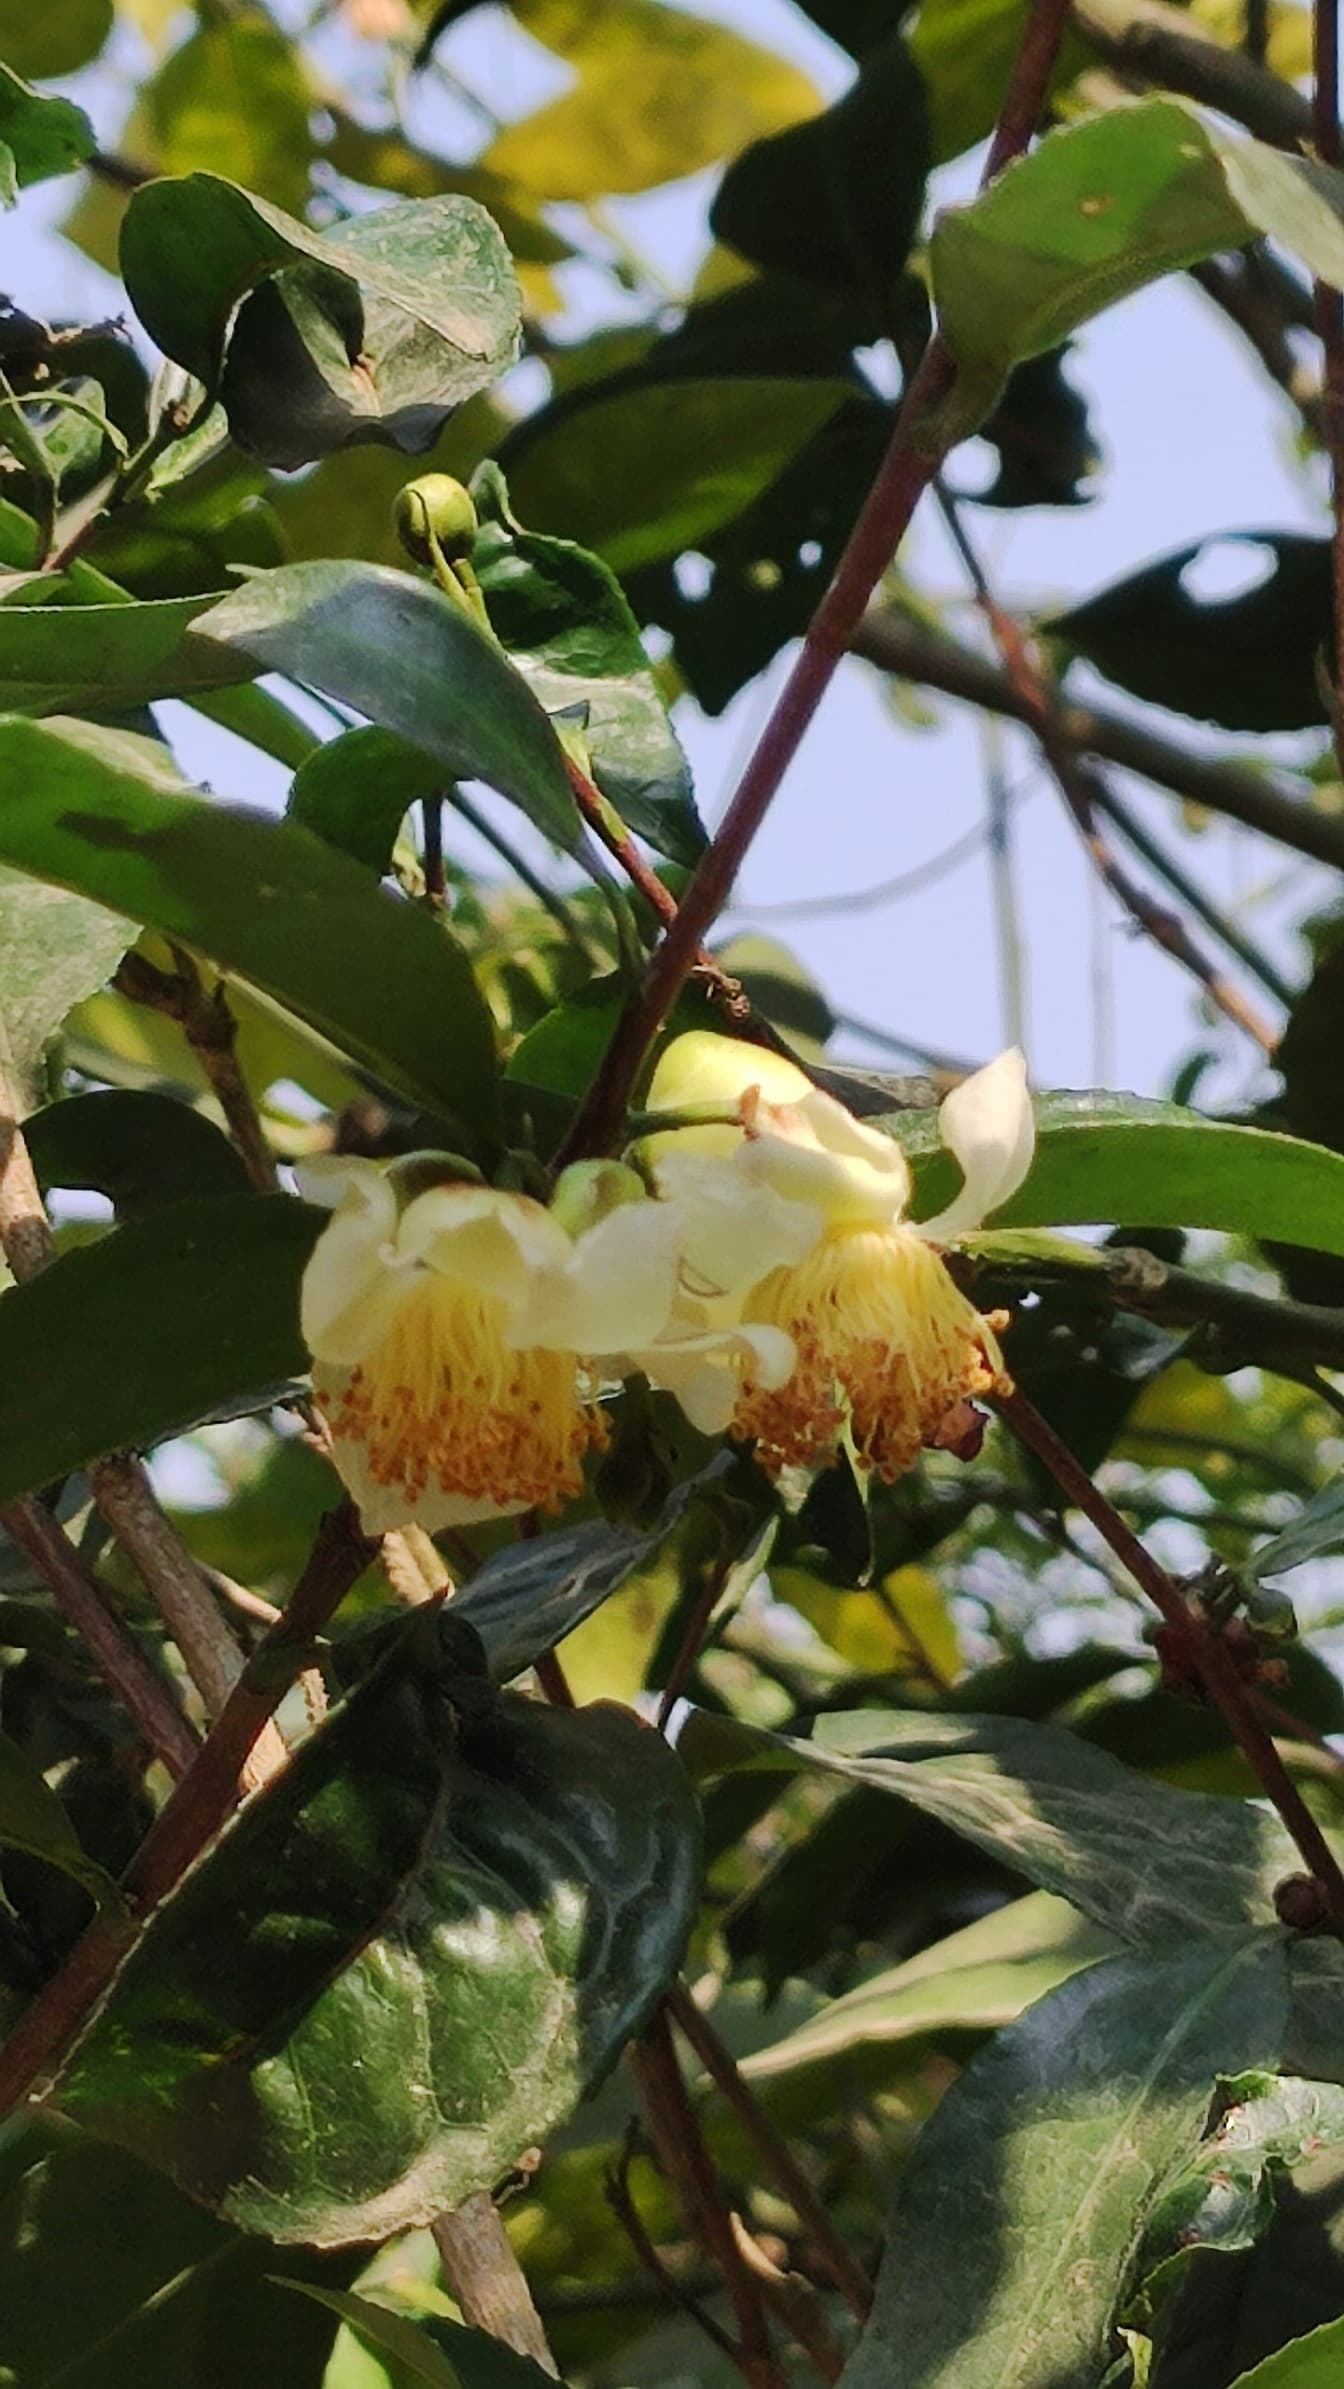 Žltkasté kamélie poľné kvety (Camellia sinensis) medzi vetvami a zelenými listami